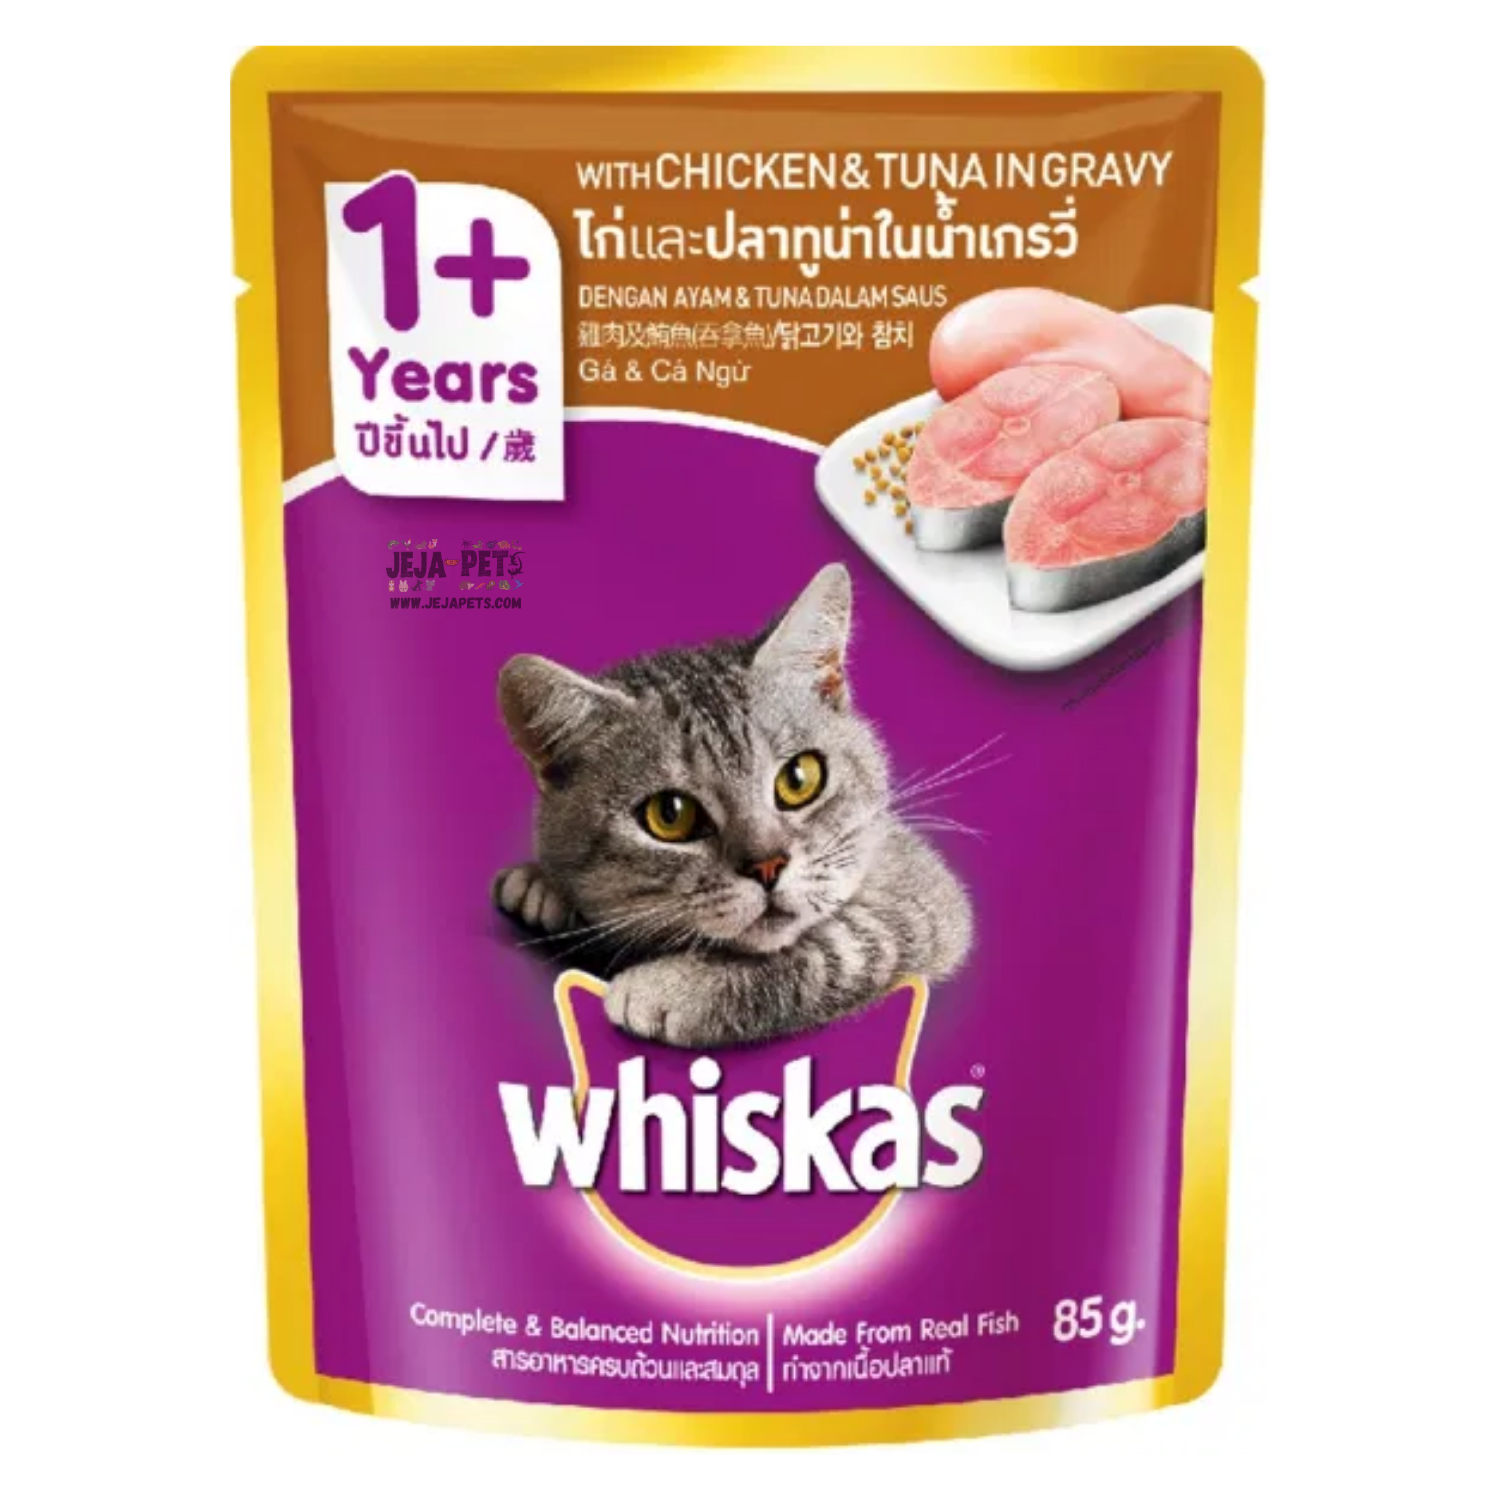 [DISCONTINUED] Whiskas Pouch Chicken & Tuna In Gravy Cat Wet Food - 80g